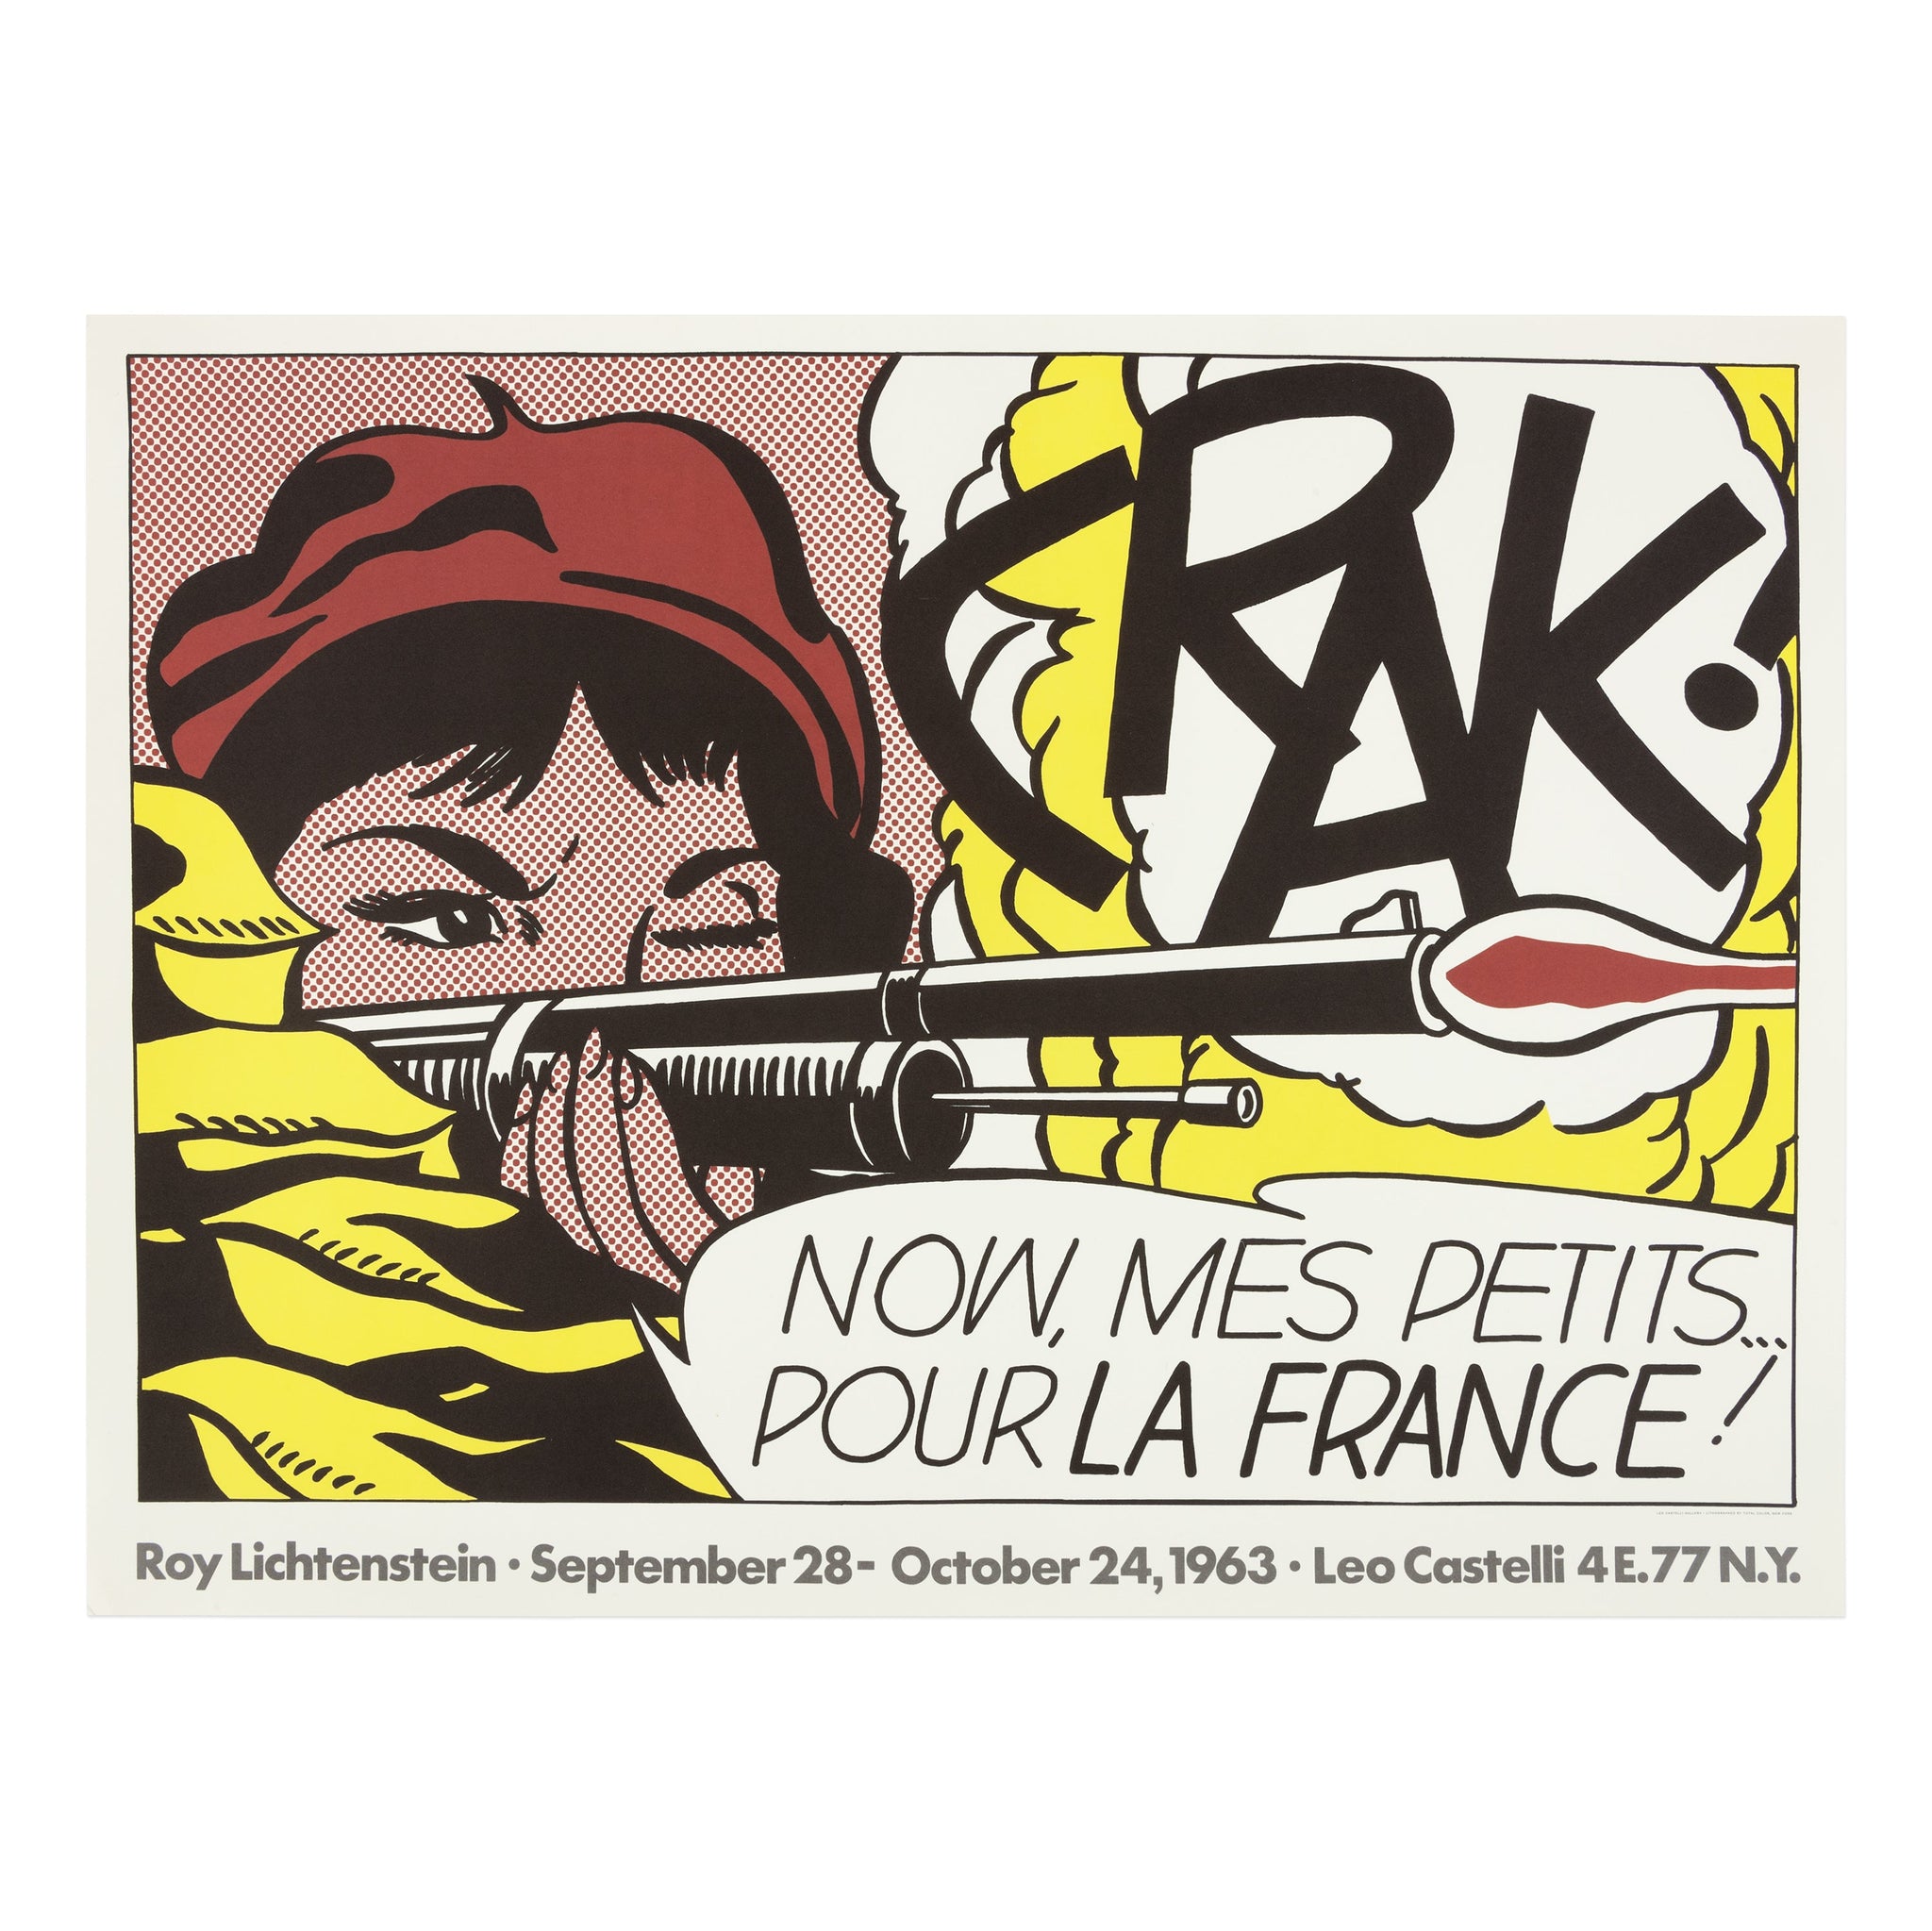 Roy Lichtenstein: CRAK! rare poster